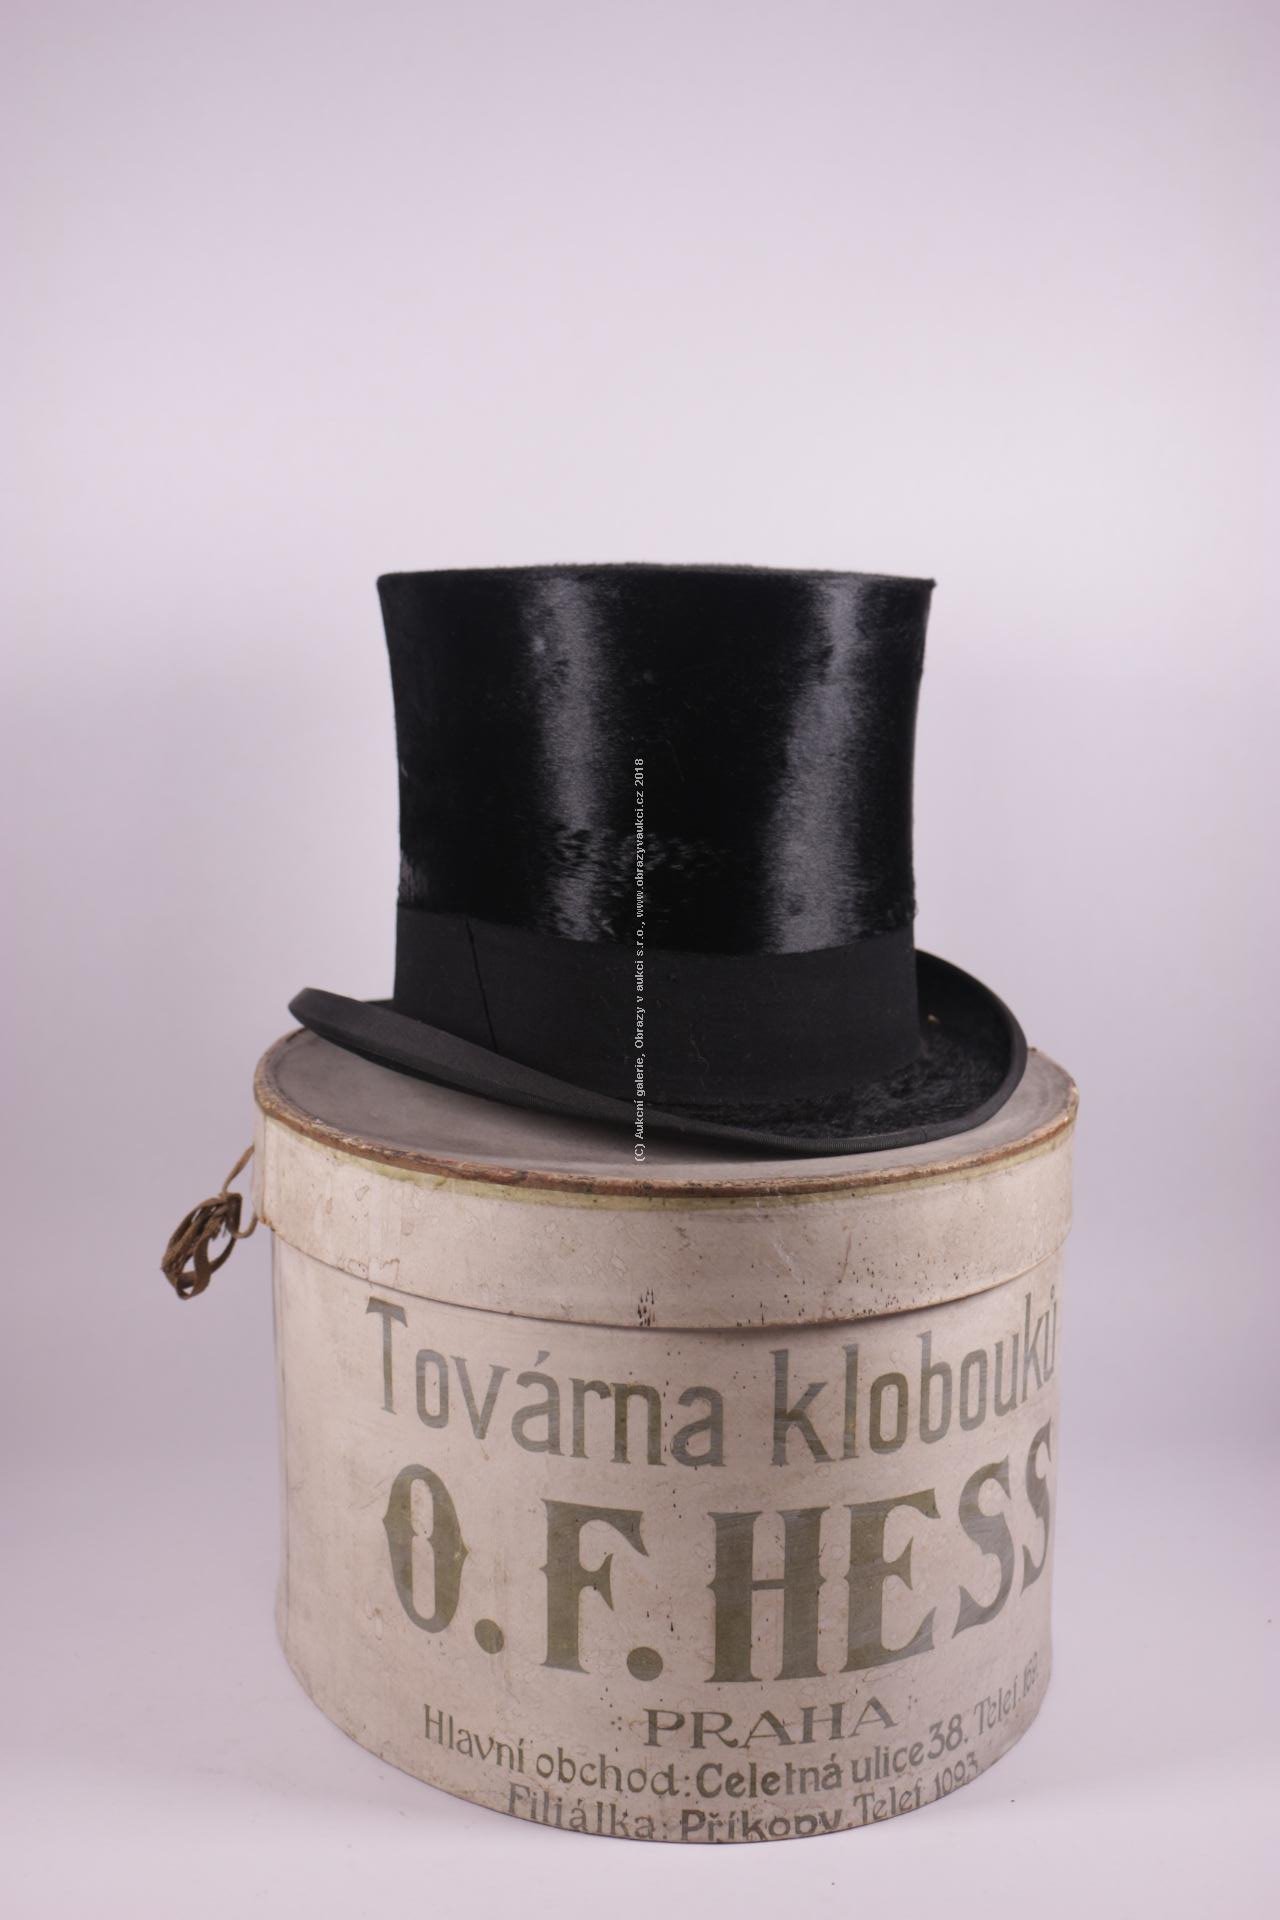 O.F. Hess - Klobouk v původní krabici